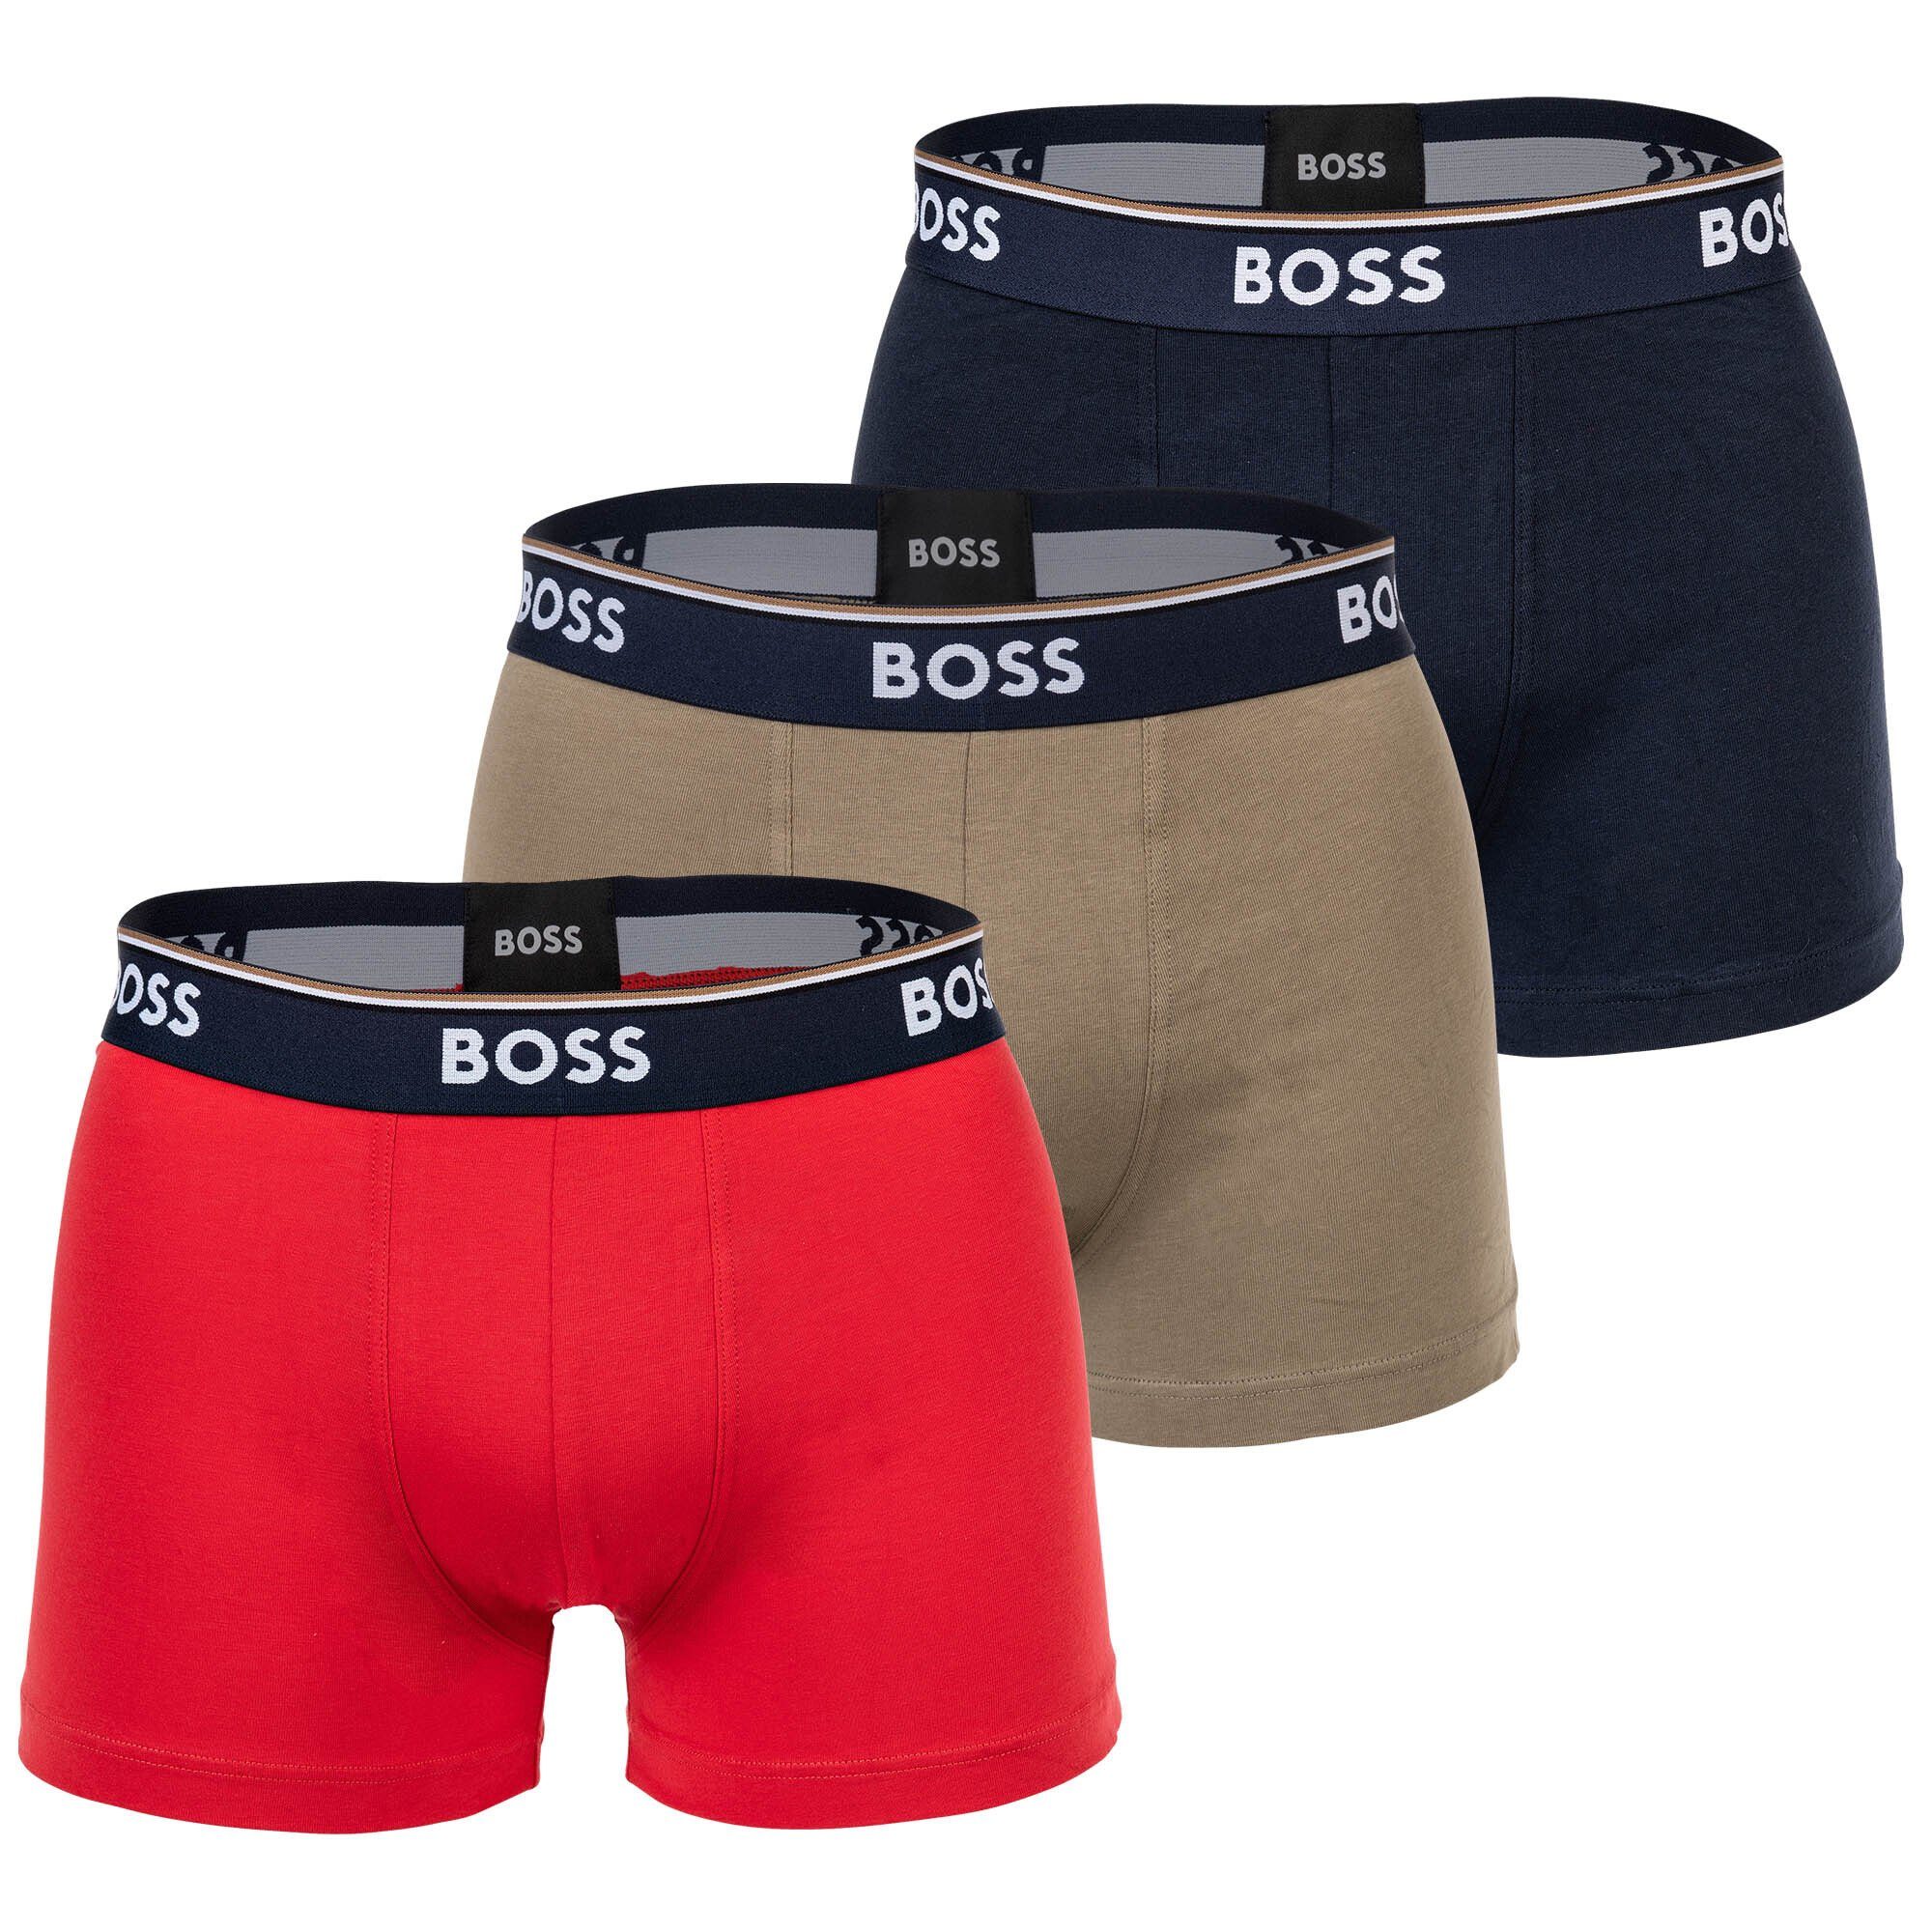 BOSS Boxer Herren Power, Rot/Dunkelblau/Olive 3er Pack - Trunks, Unterwäsche